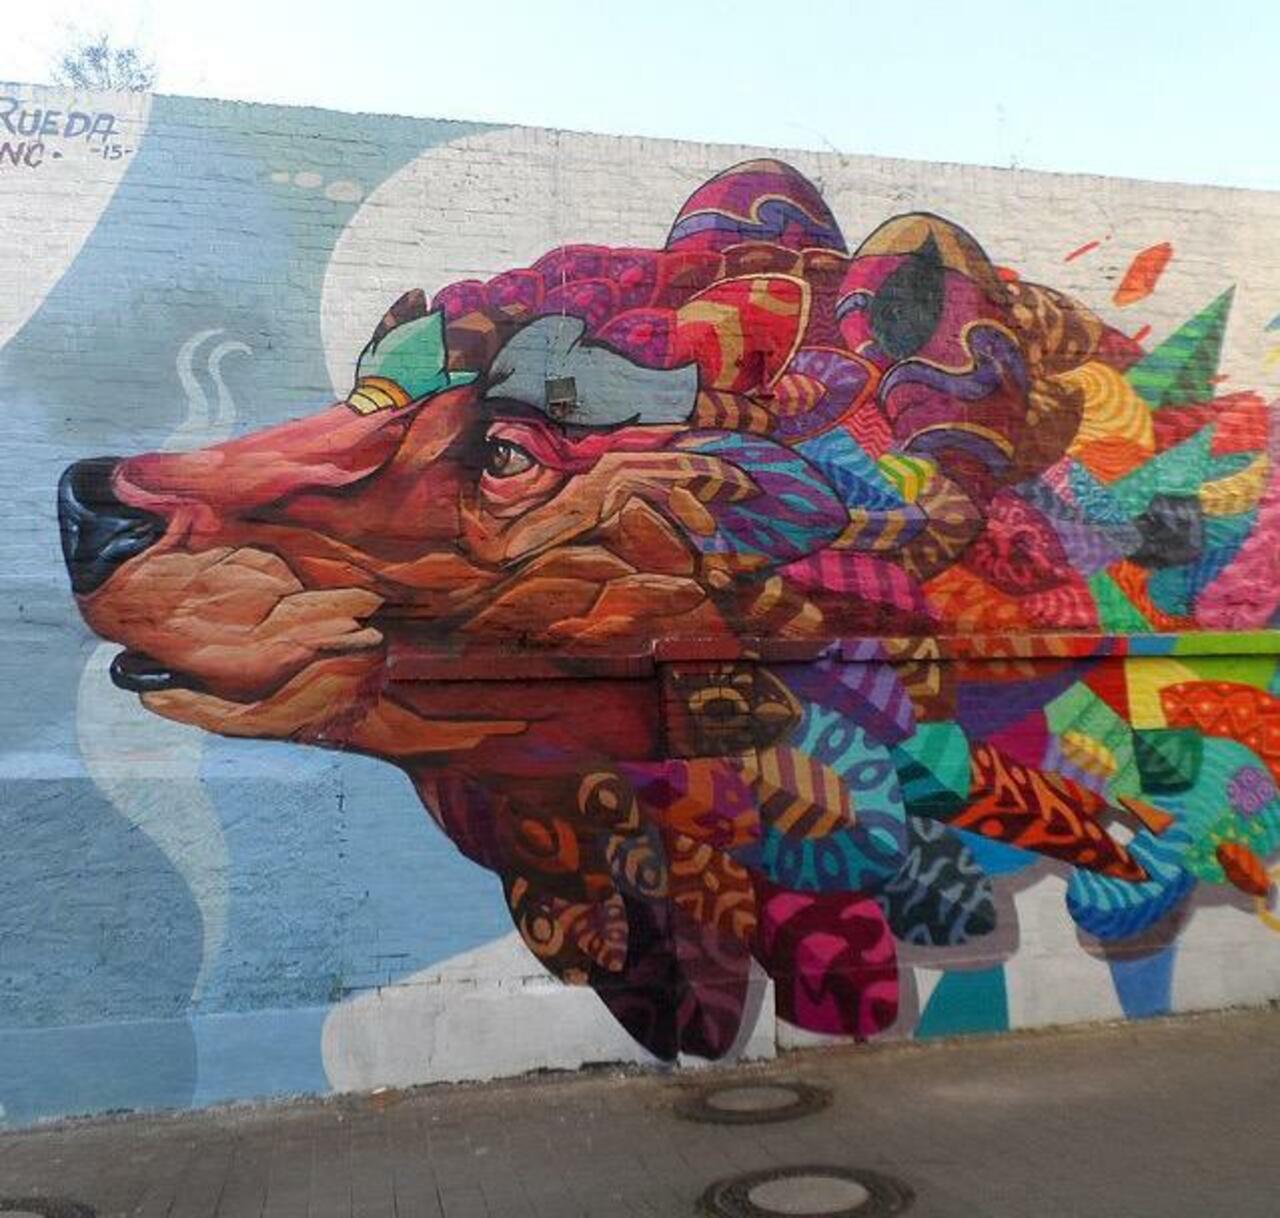 Farid Rueda Street Art 

#art #graffiti #mural #streetart http://t.co/dtQbc713Cw